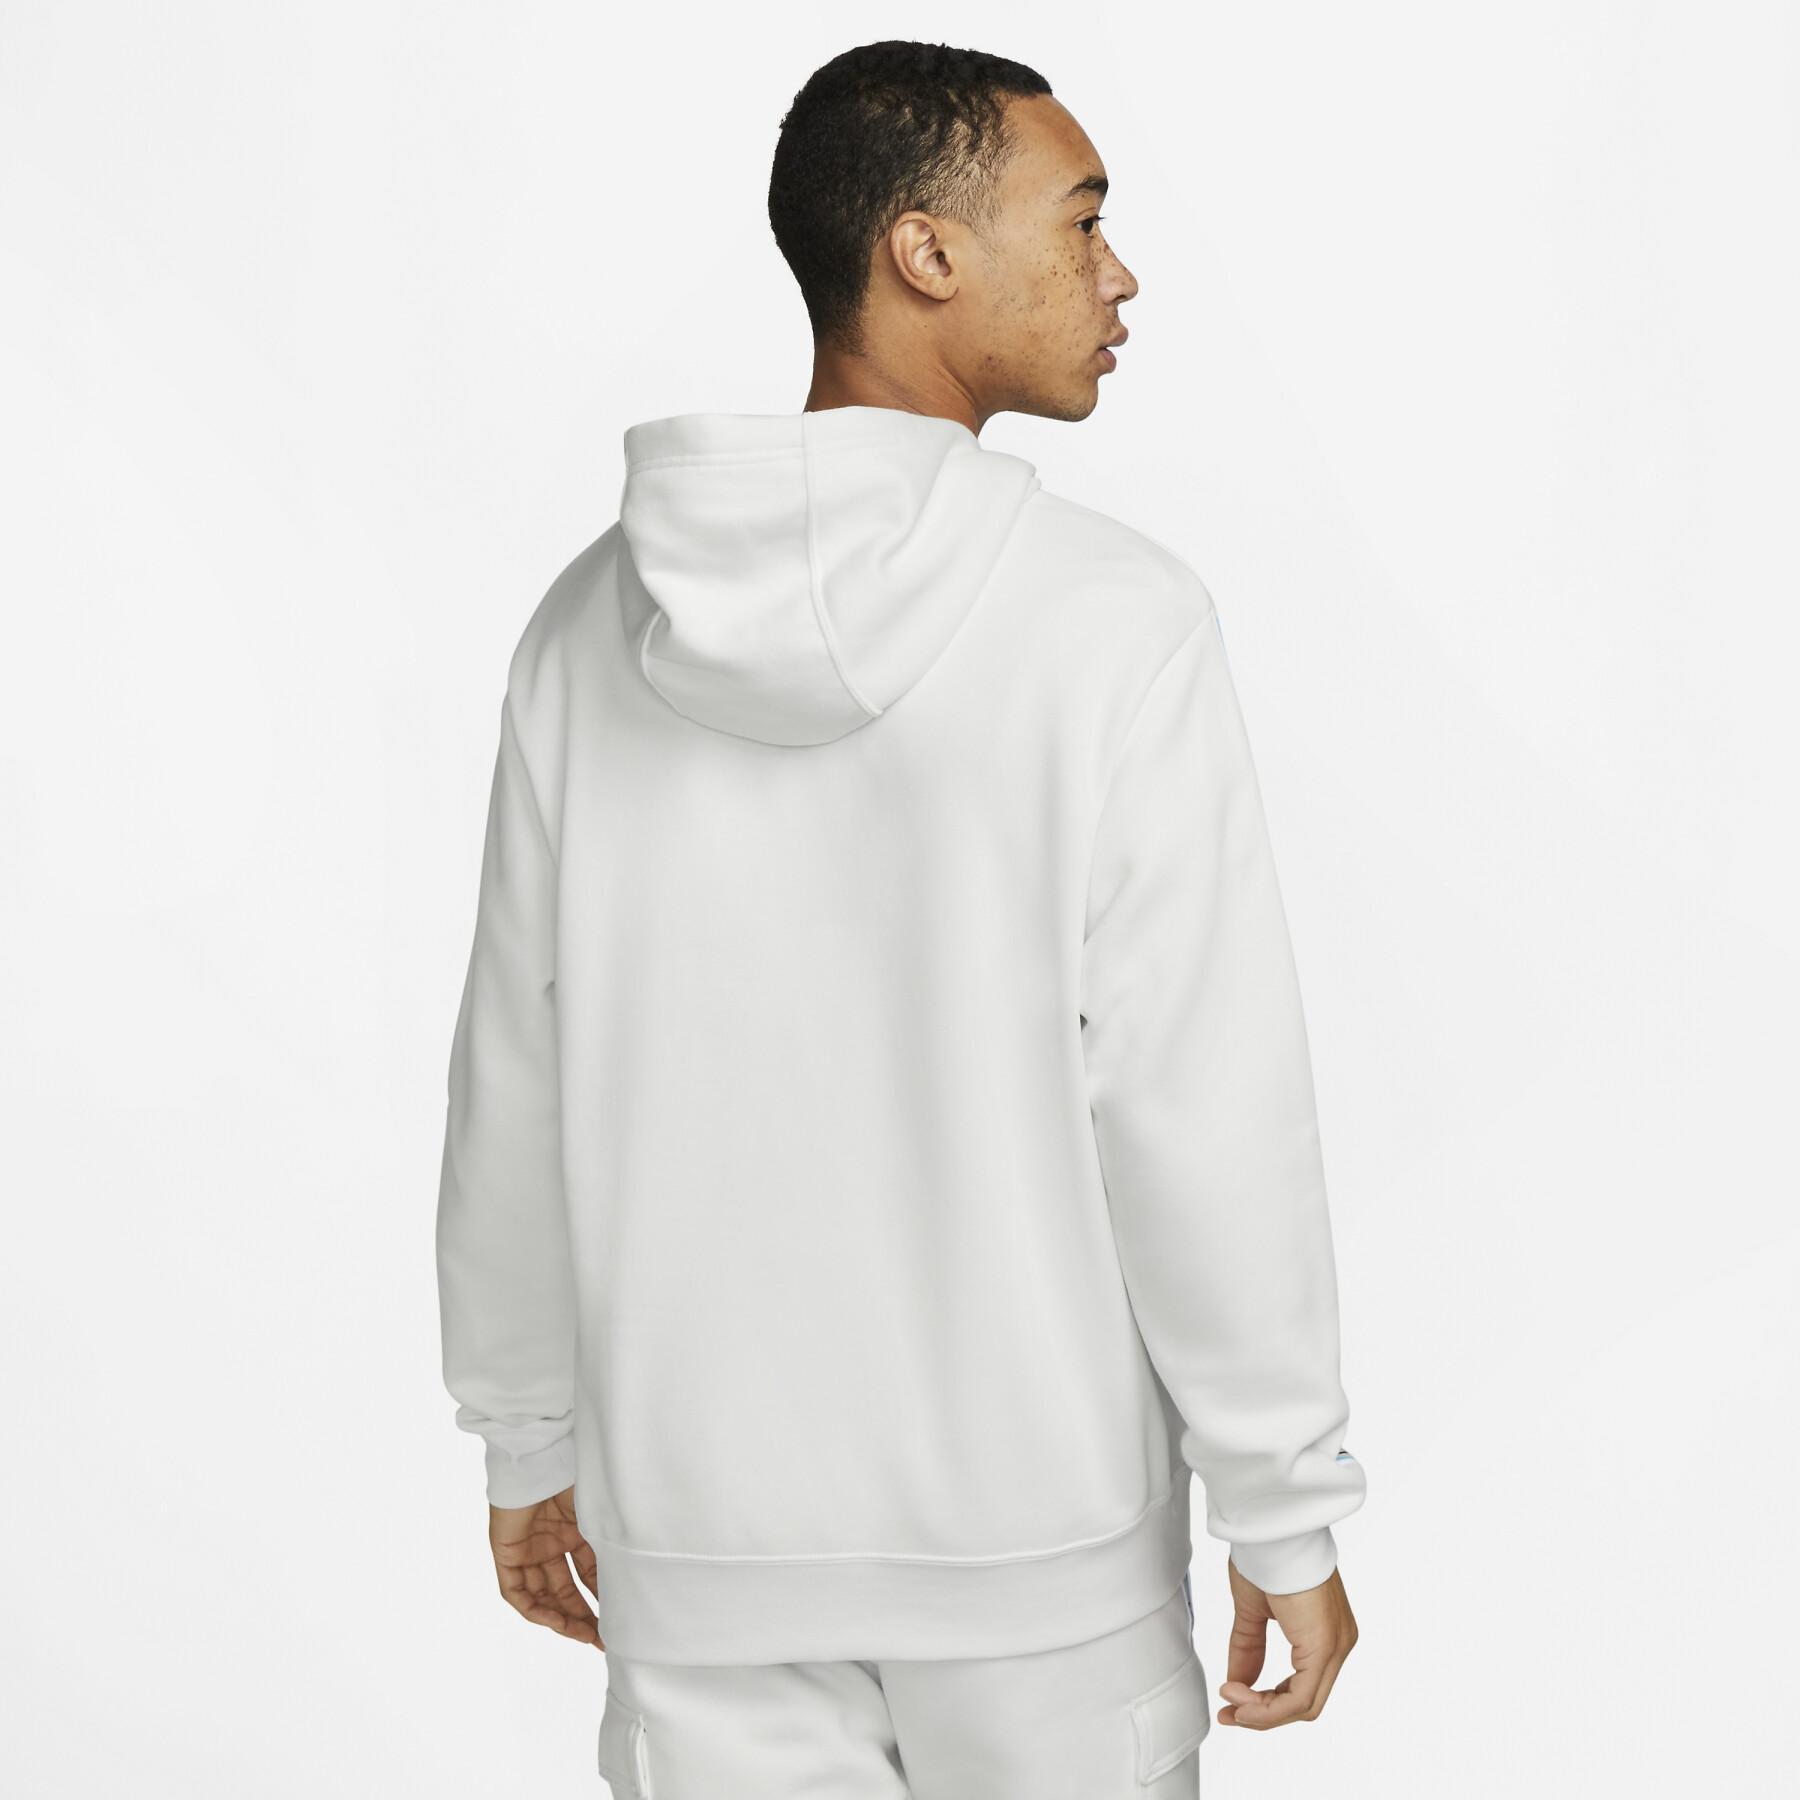 Sweatshirt hooded Nike Repeat Fleece